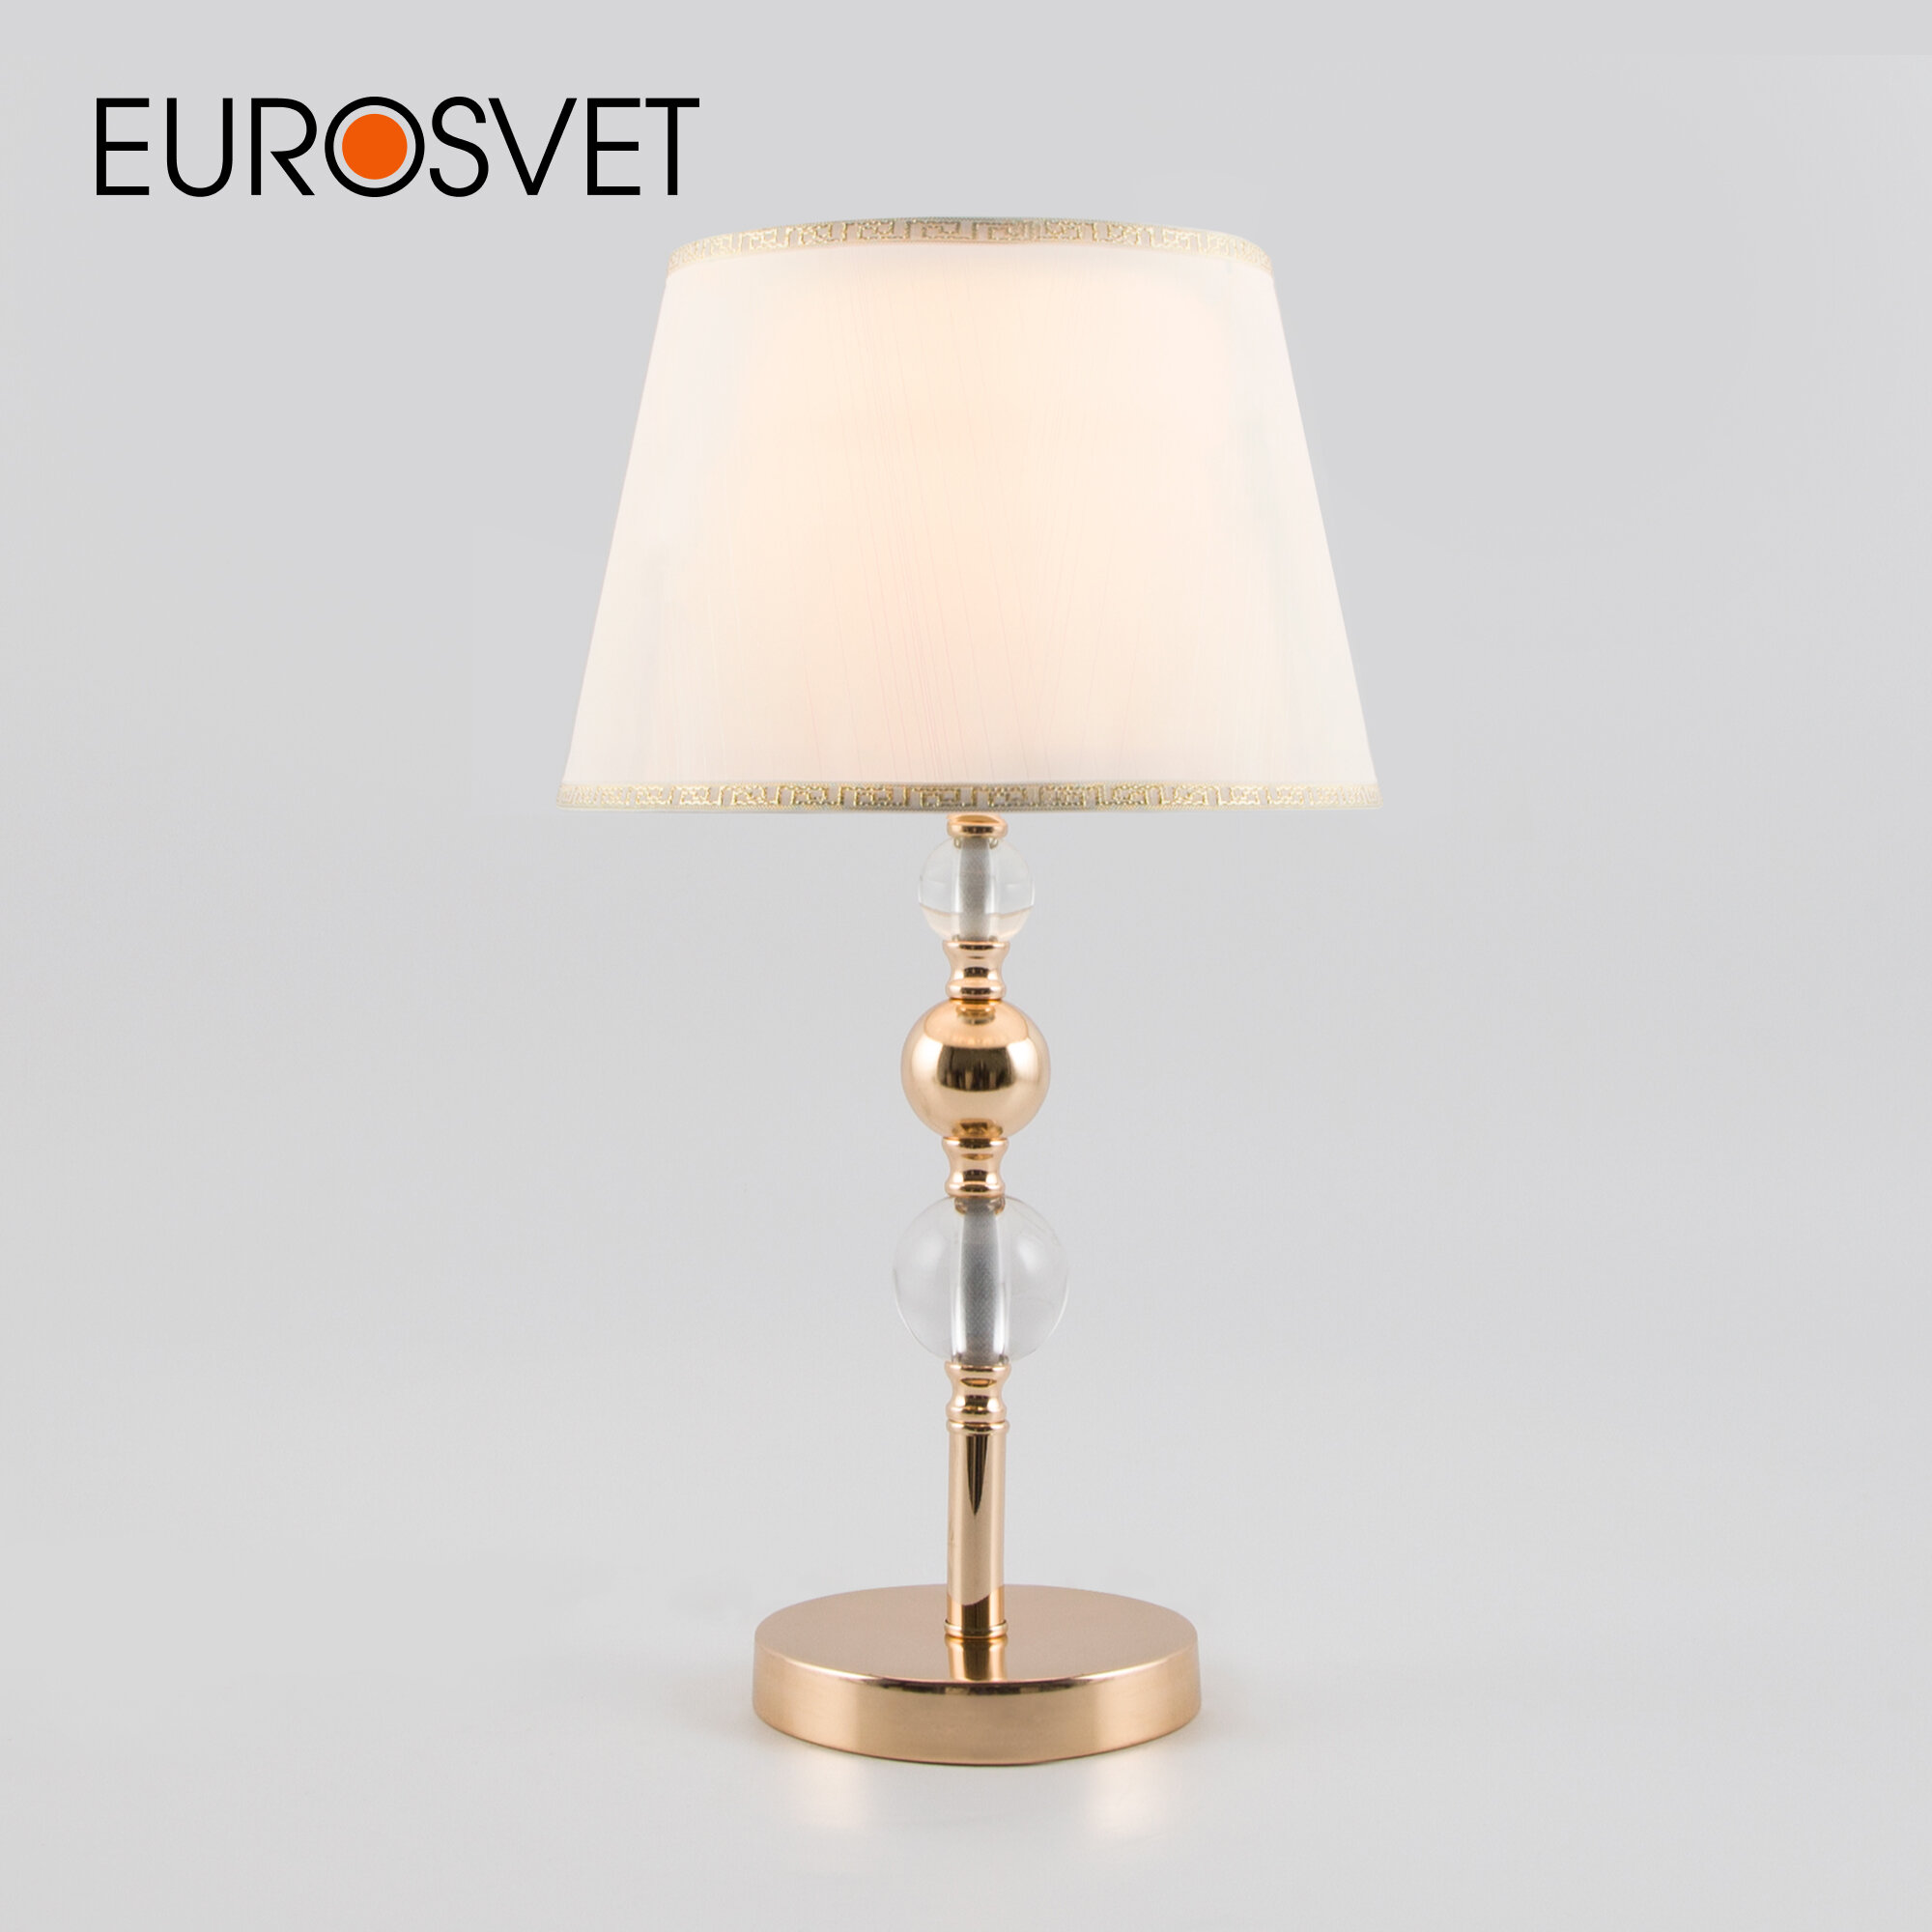 Классическая настольная лампа Eurosvet 01071/1 золото